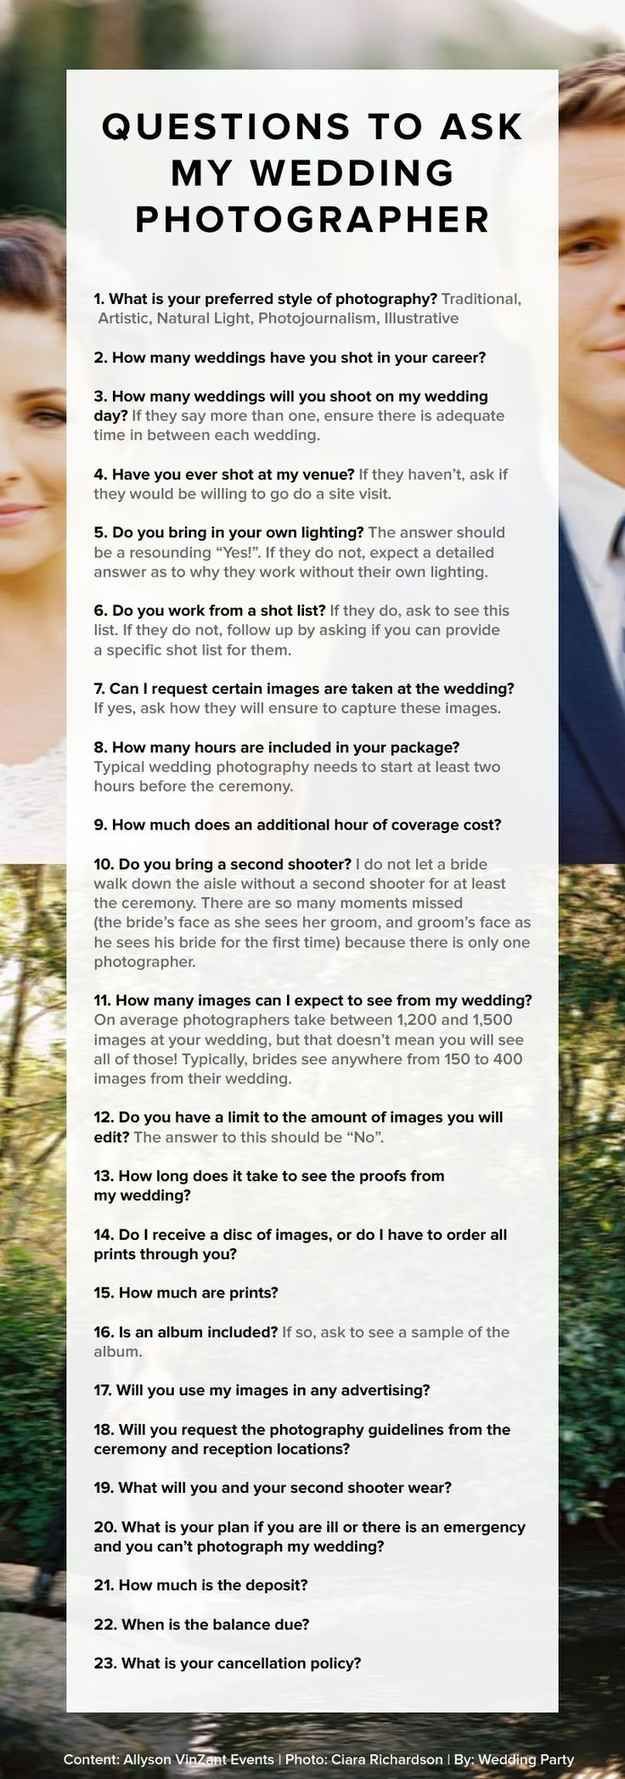 Ask wedding photographer